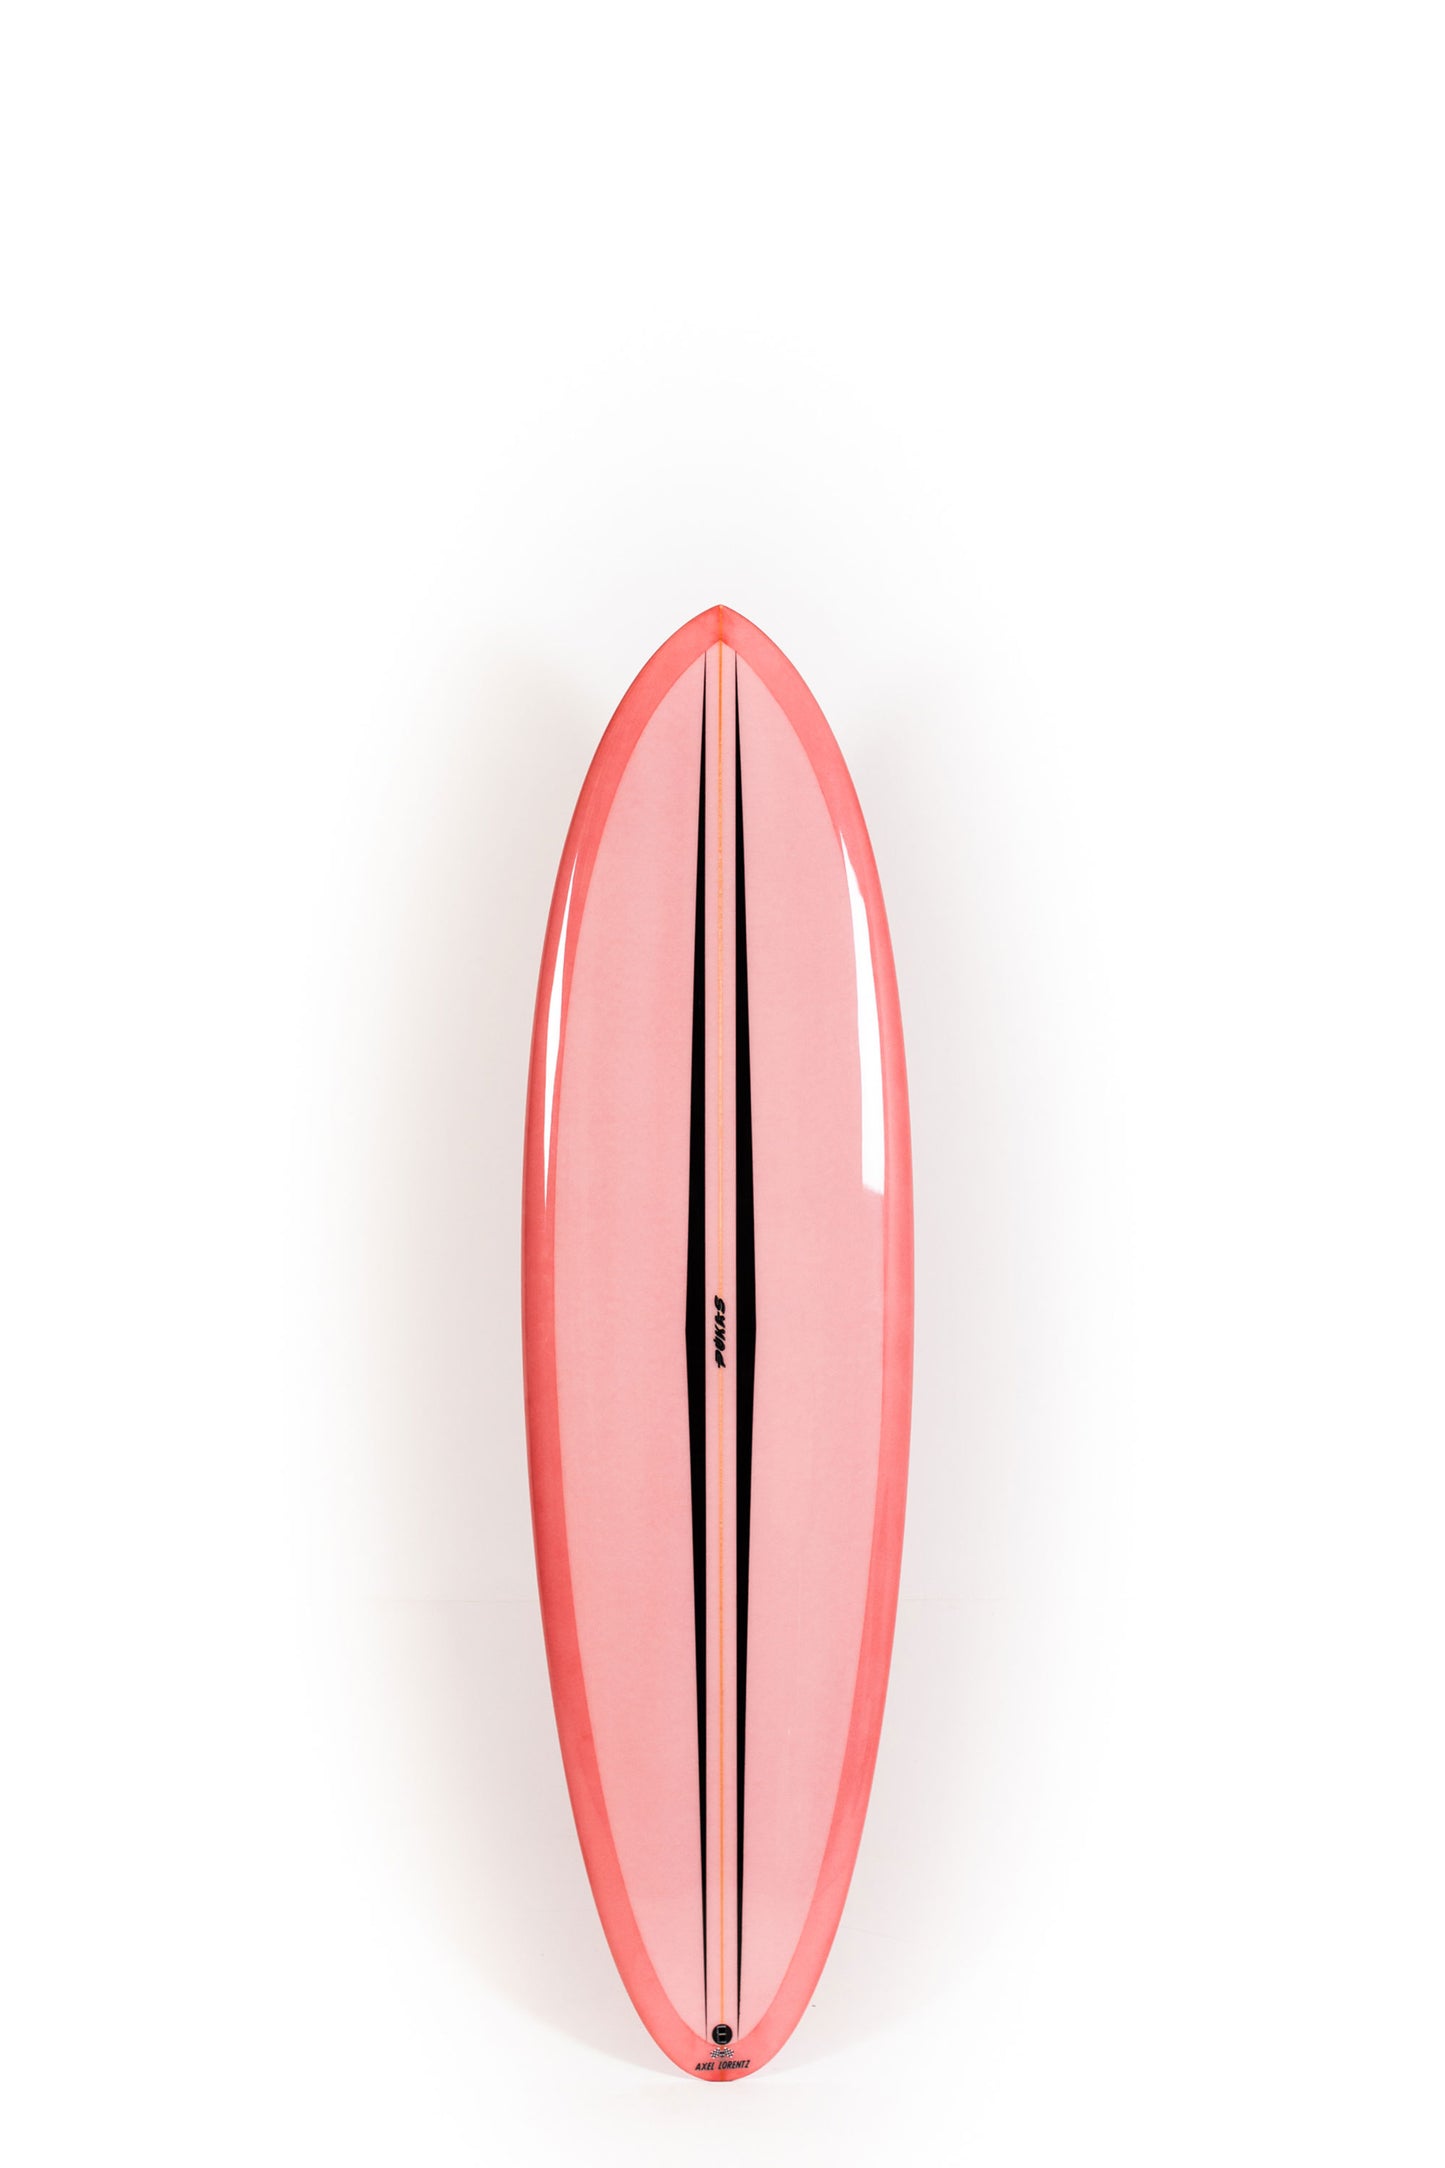 Pukas Surf Shop - Pukas Surfboard - LA CÔTE by Axel Lorentz - 6'6" x 21,13 x 2,81 - 42L -  AX09624